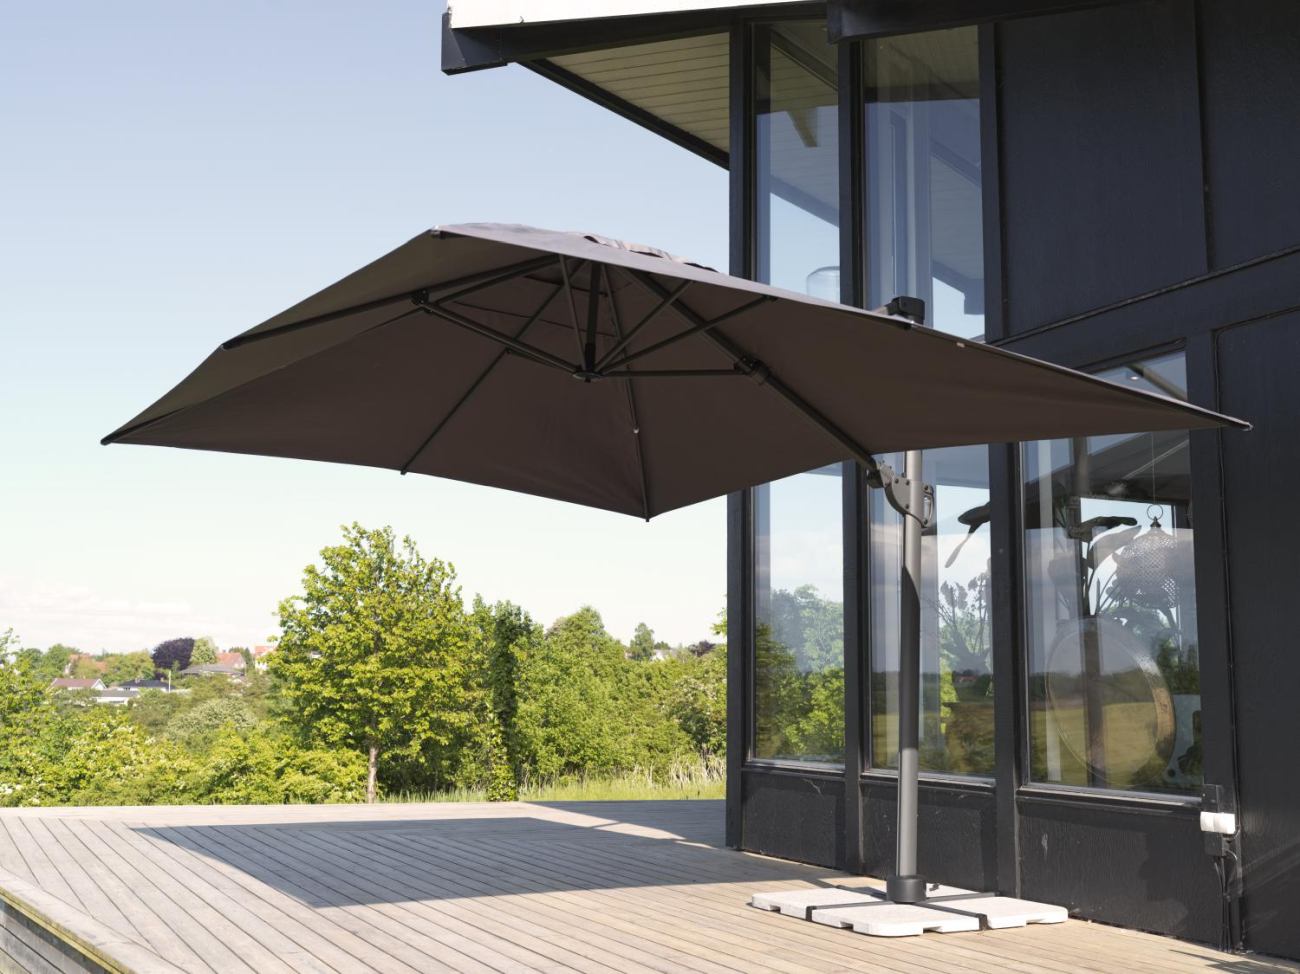 Der Sonnenschirm Varallo überzeugt mit seinem modernen Design. Gefertigt wurde er aus Kunstfasern, welcher einen grauen Farbton besitzt. Das Gestell ist aus Metall und hat eine Anthrazit Farbe. Der Schirm hat eine Größe von 300x300 cm.